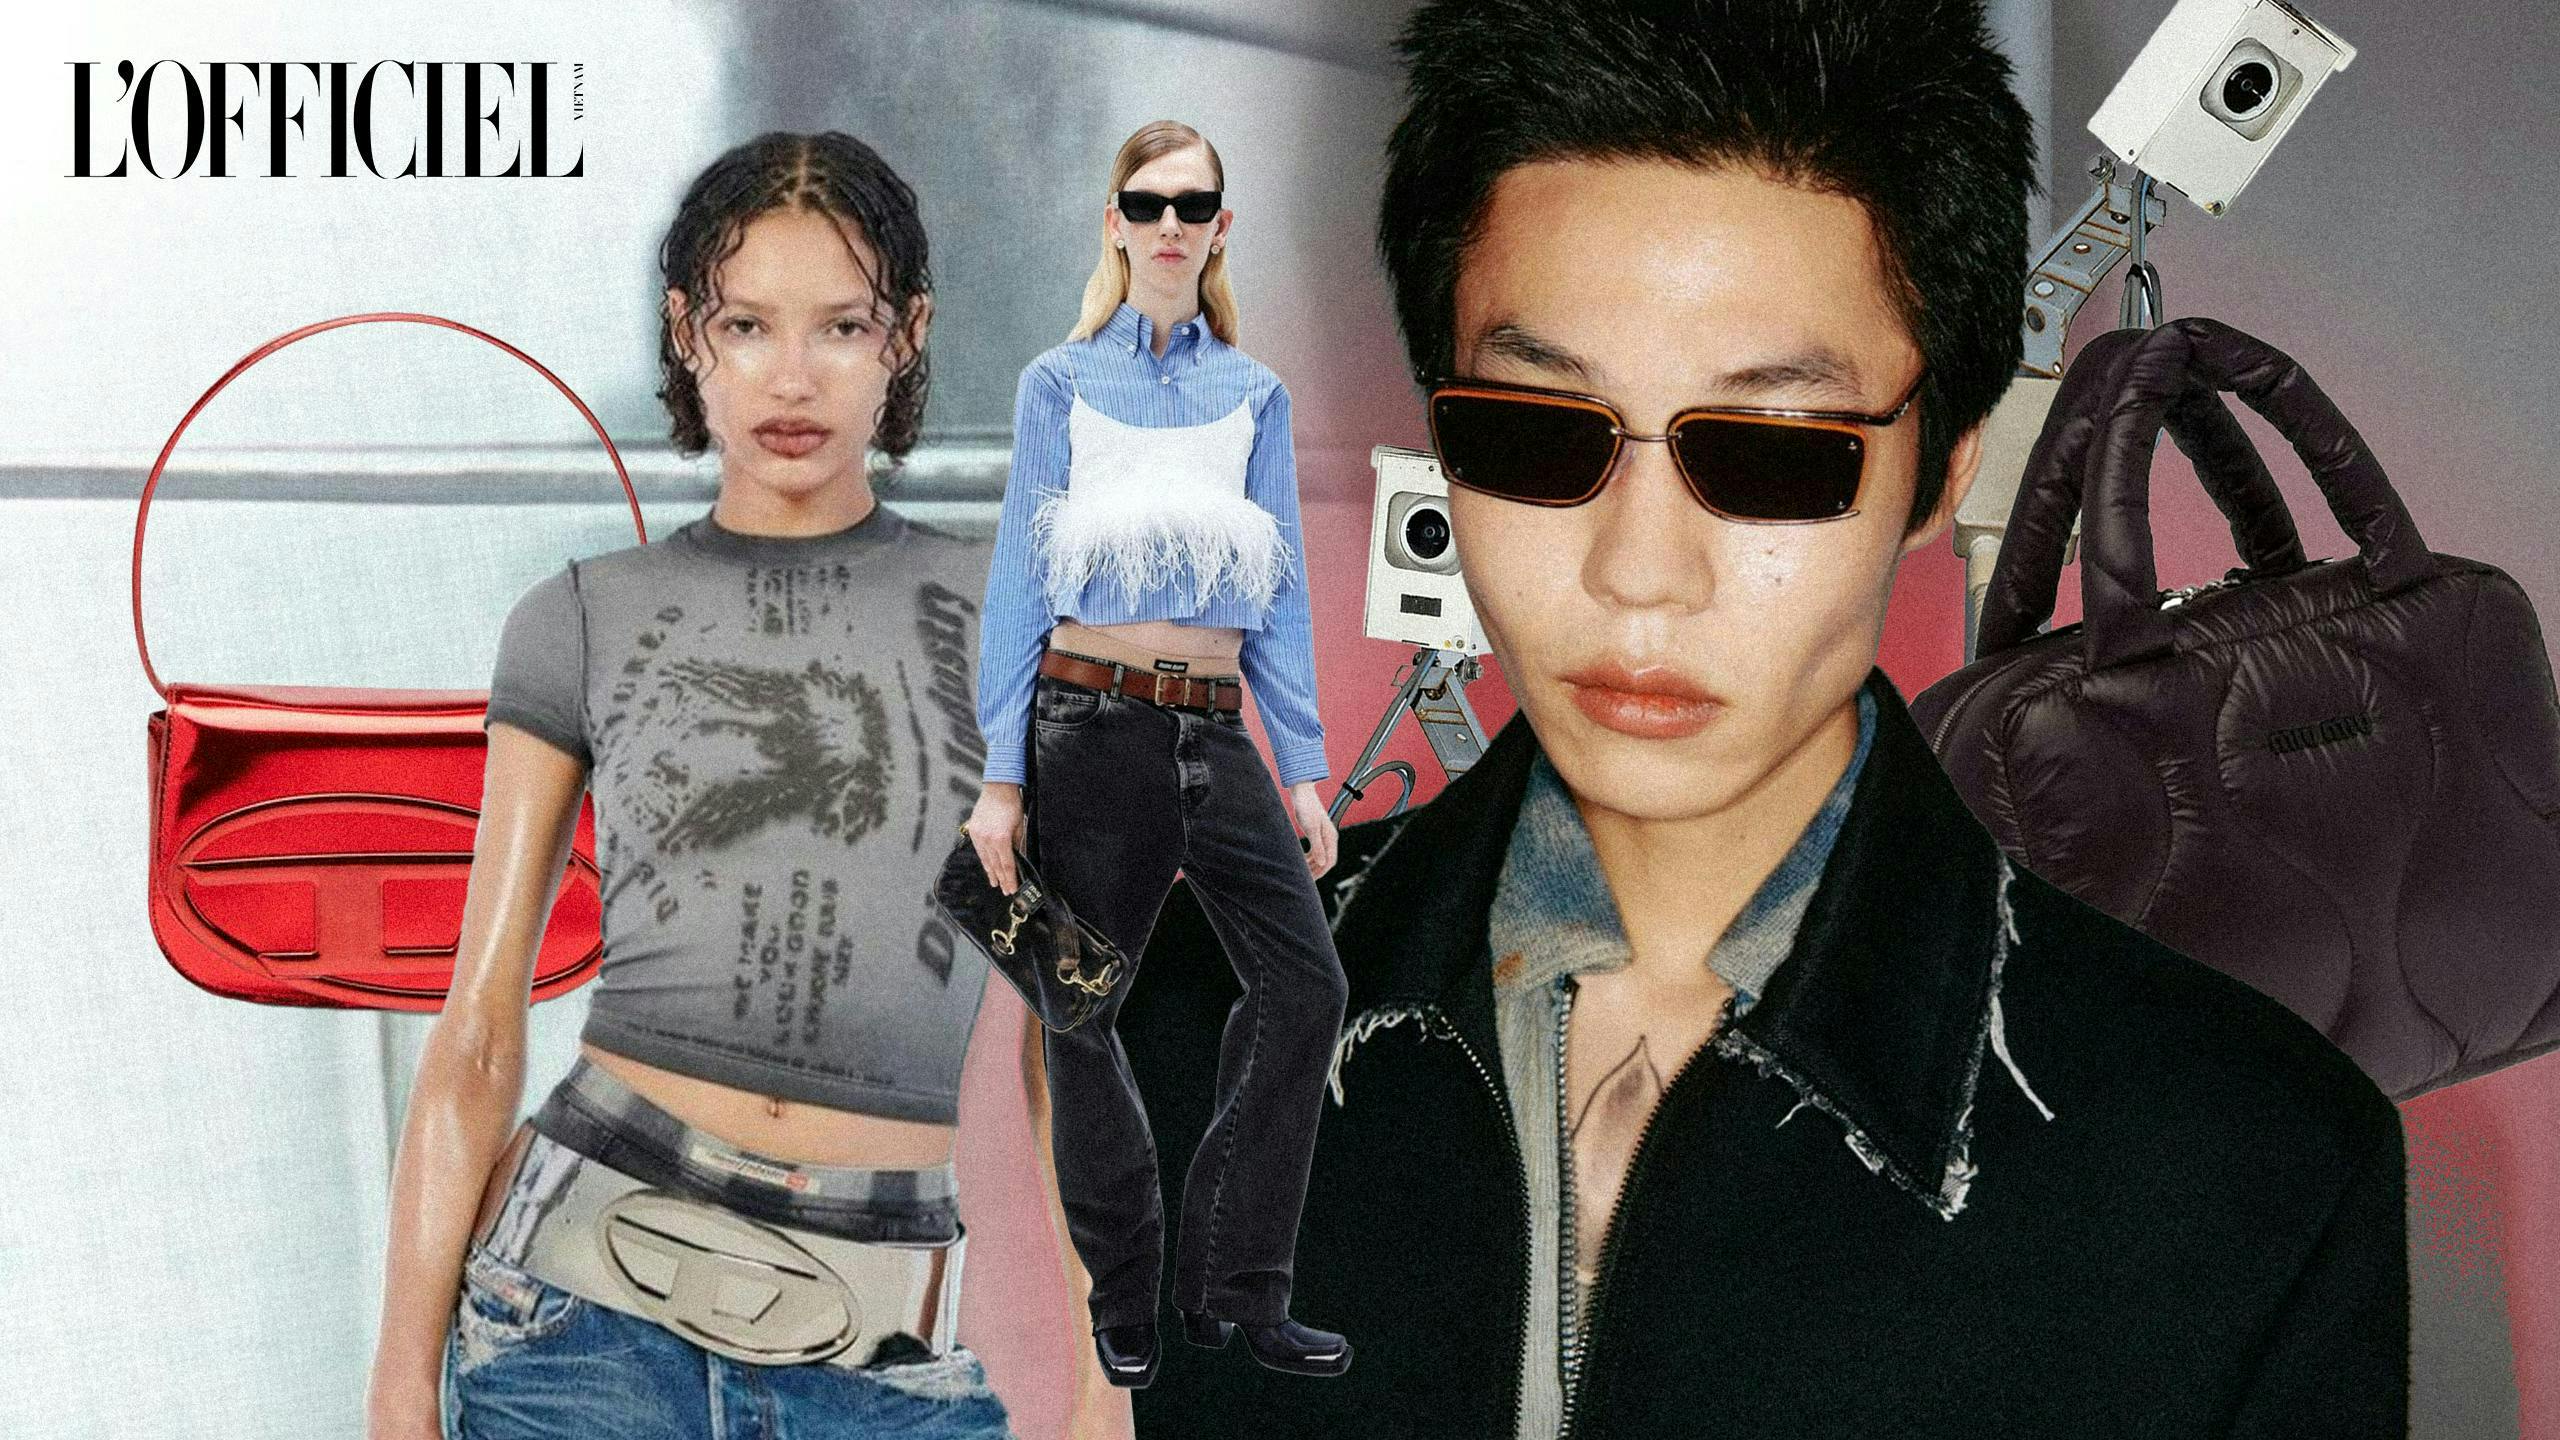 handbag accessories bag sunglasses purse belt t-shirt person man adult